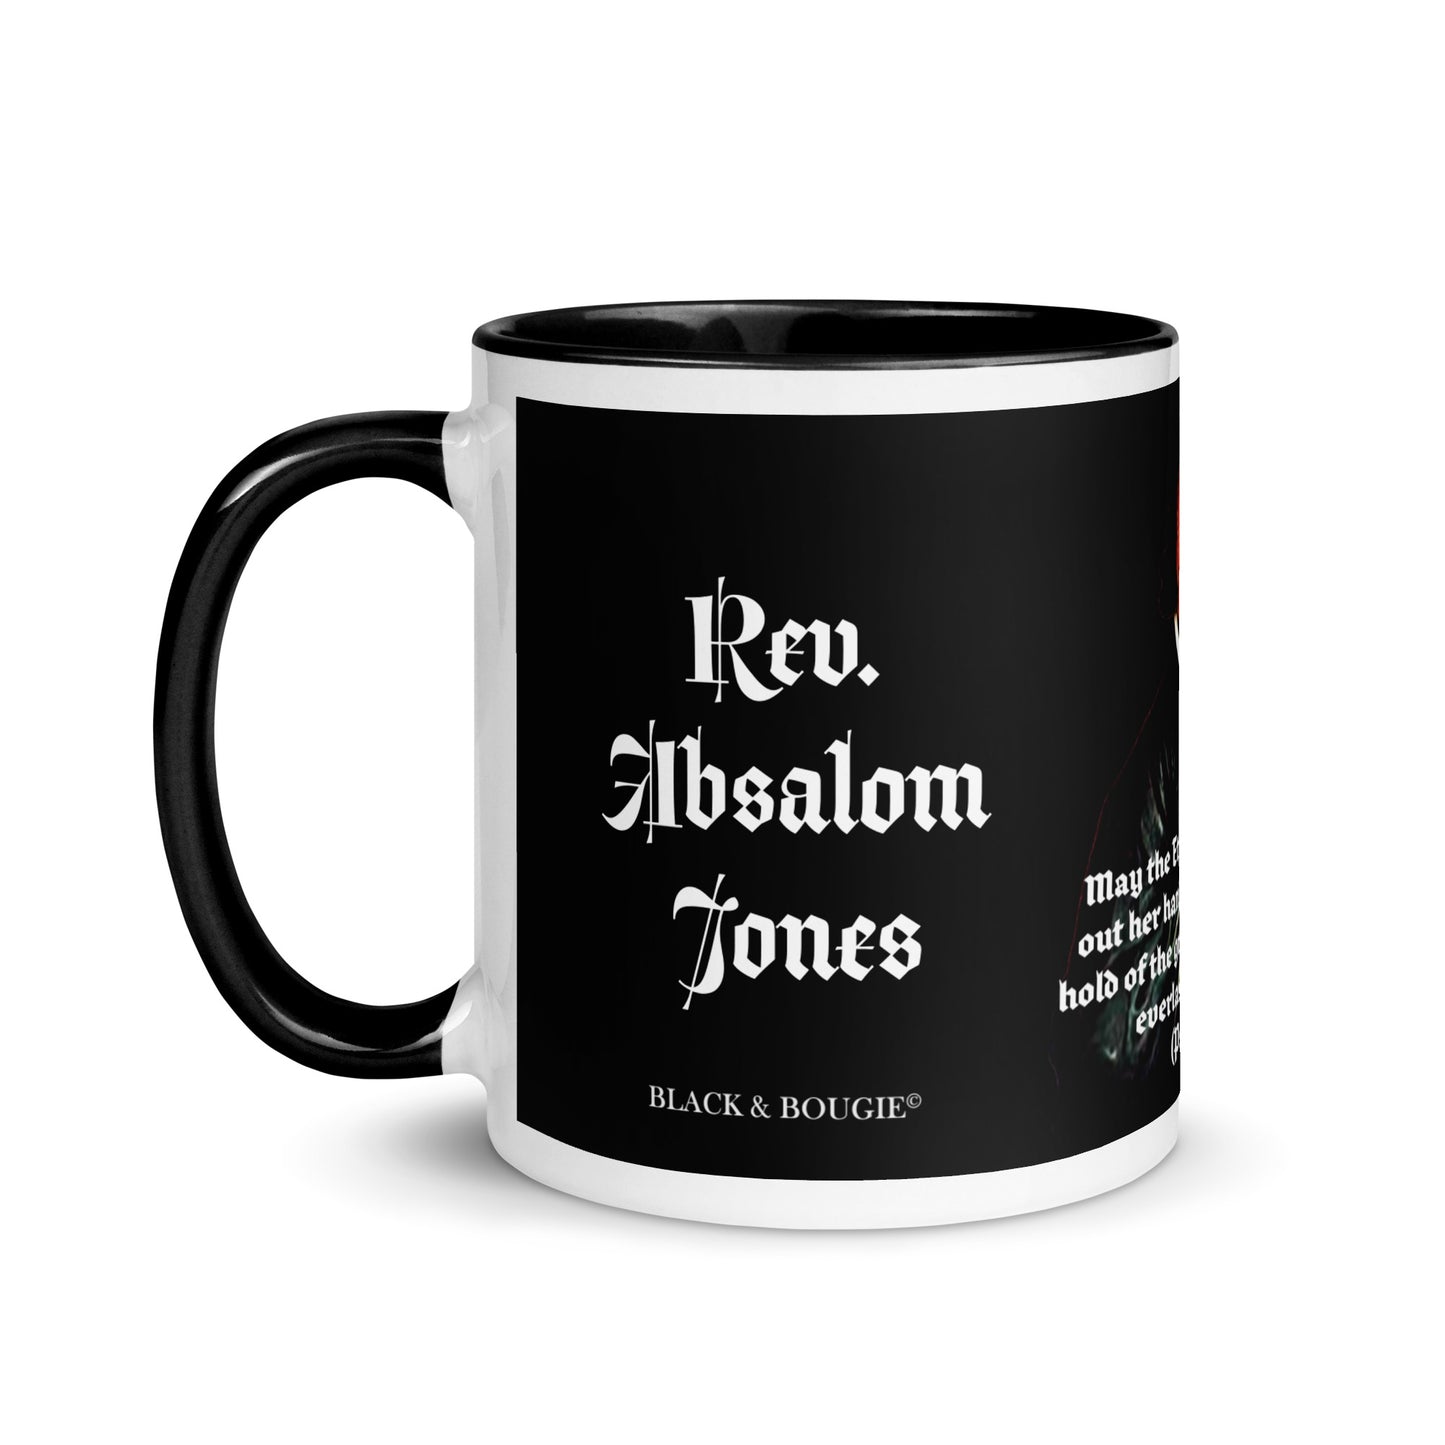 Rev. Absalom Jones Mug